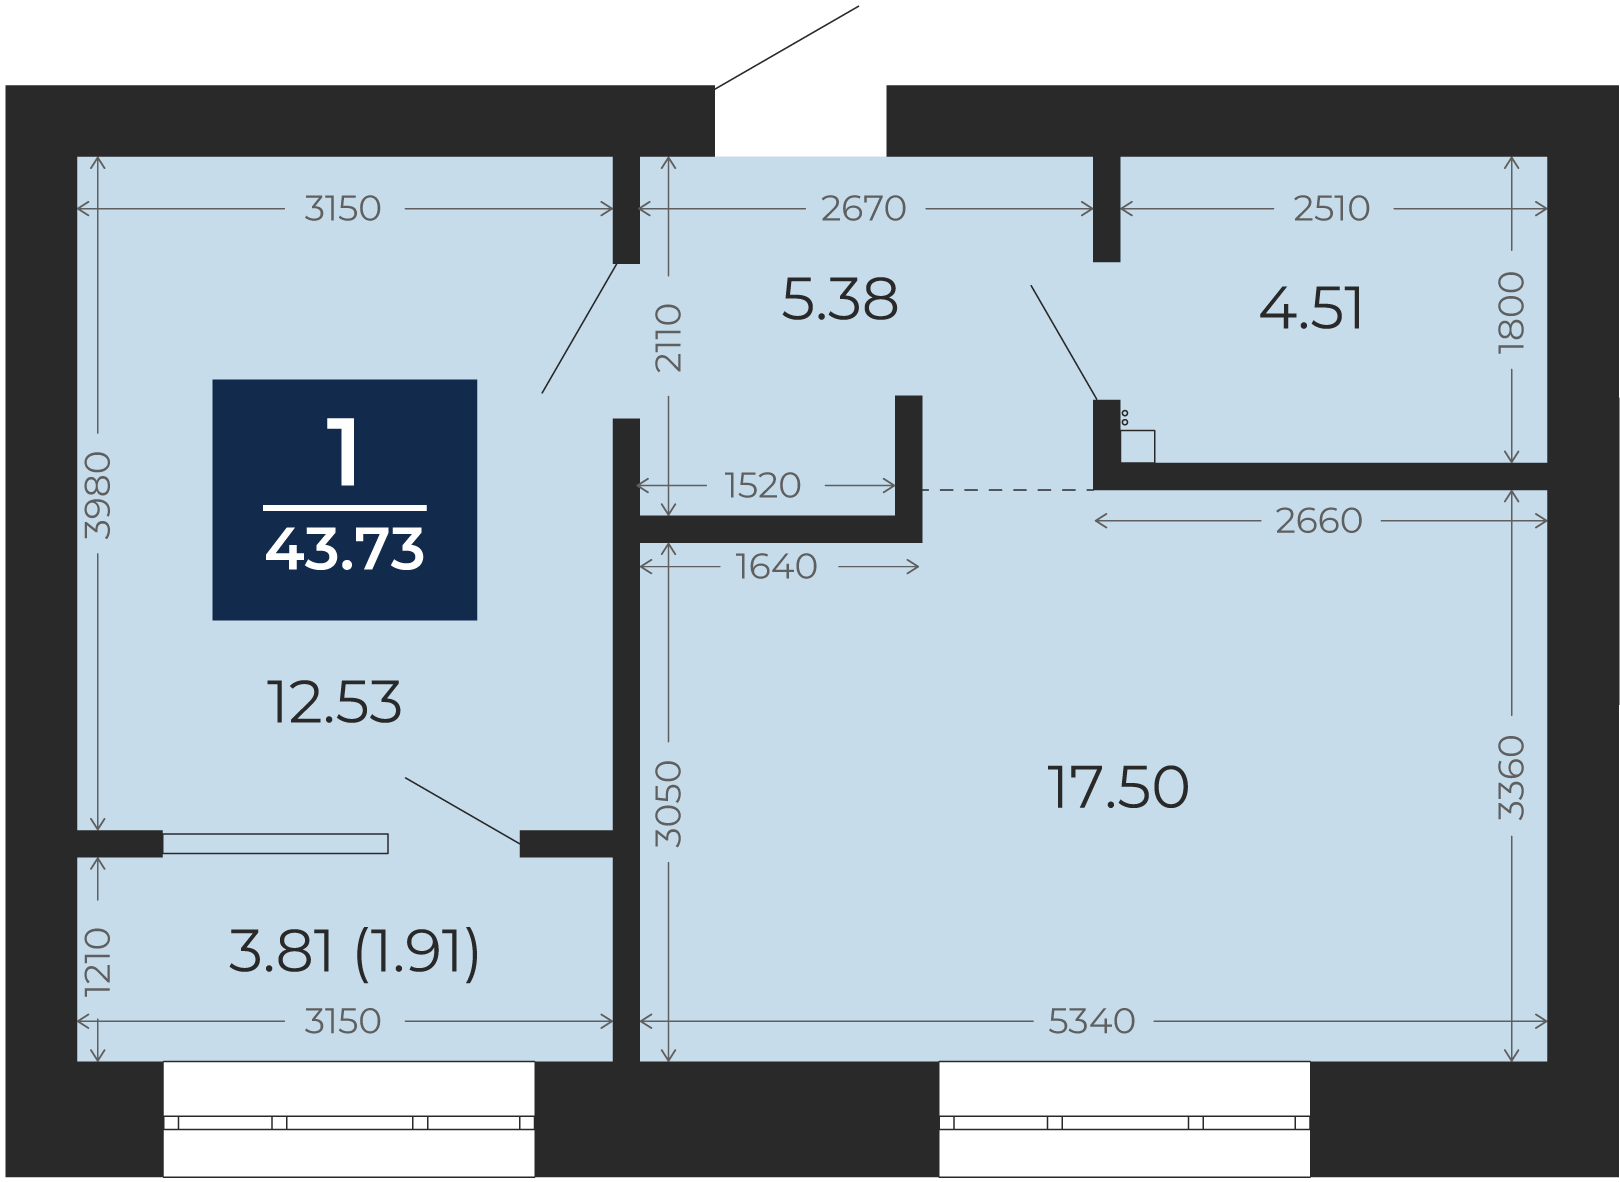 Квартира № 250, 1-комнатная, 43.73 кв. м, 10 этаж